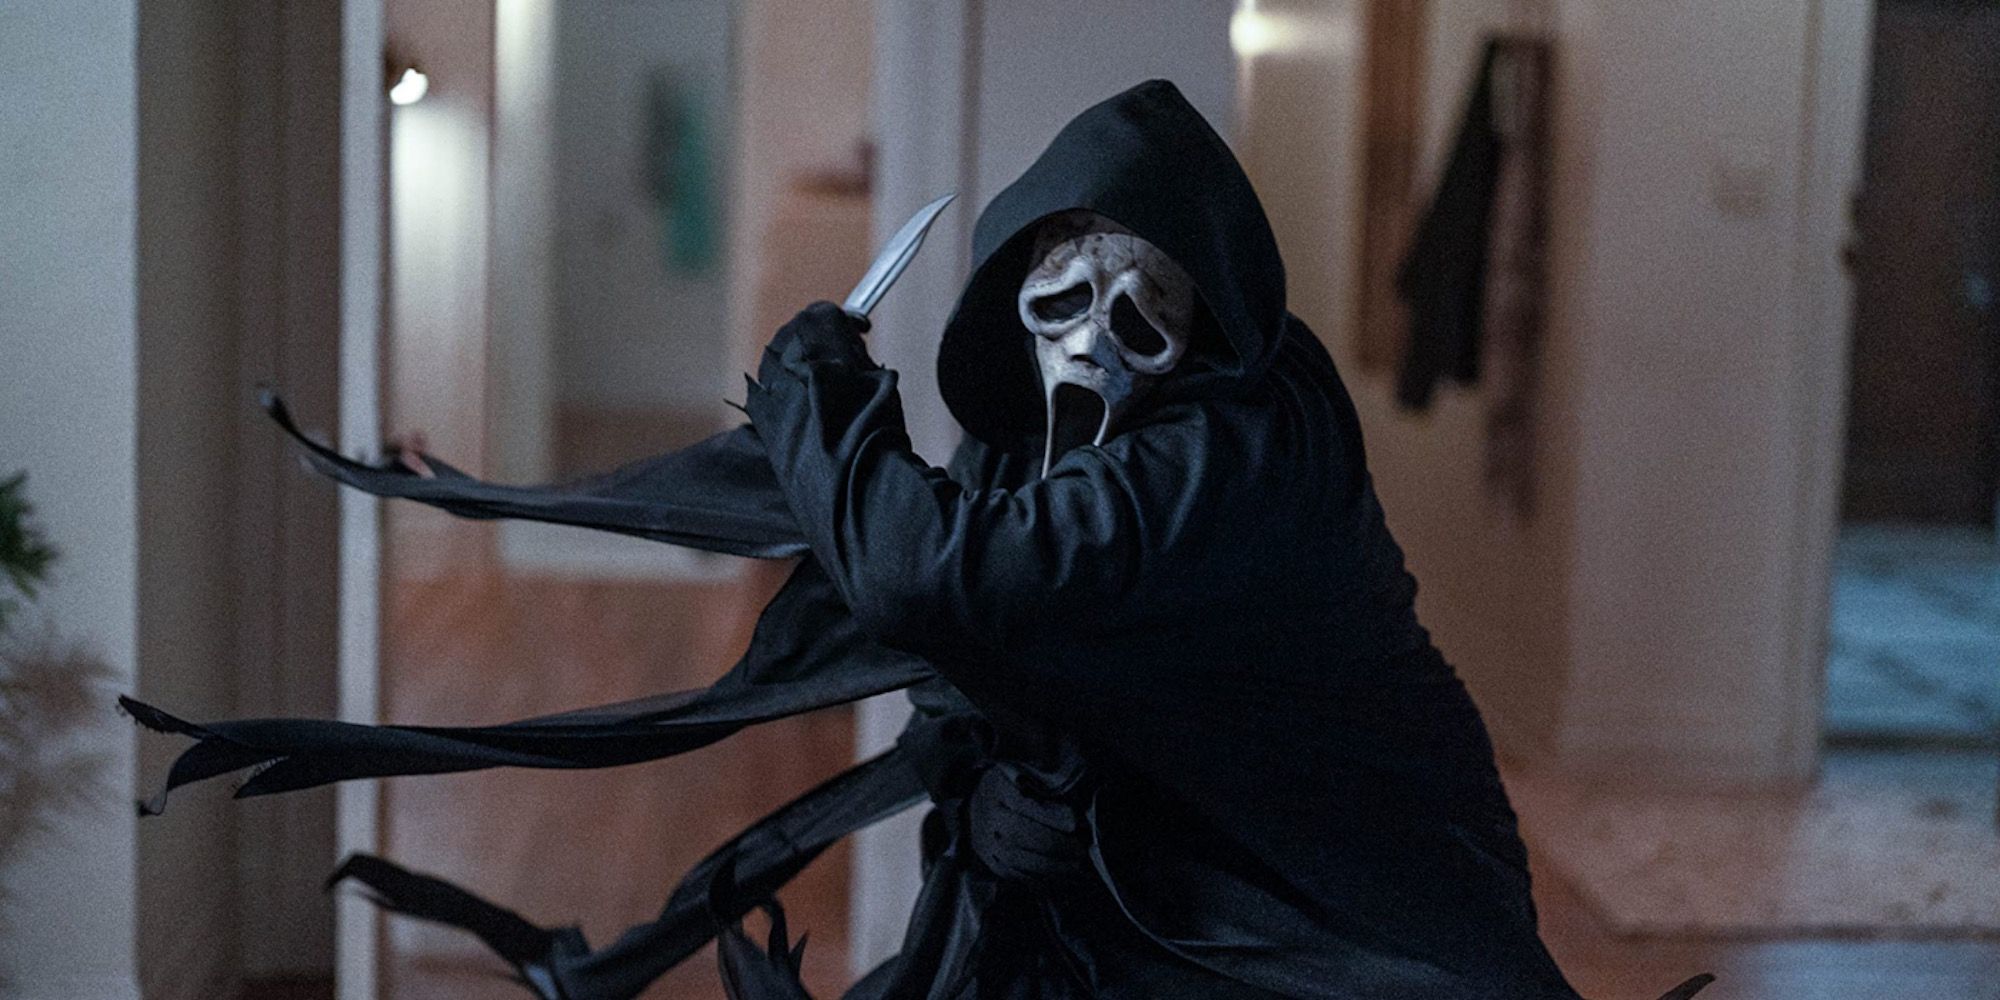 A Ghostface killer in Scream 6